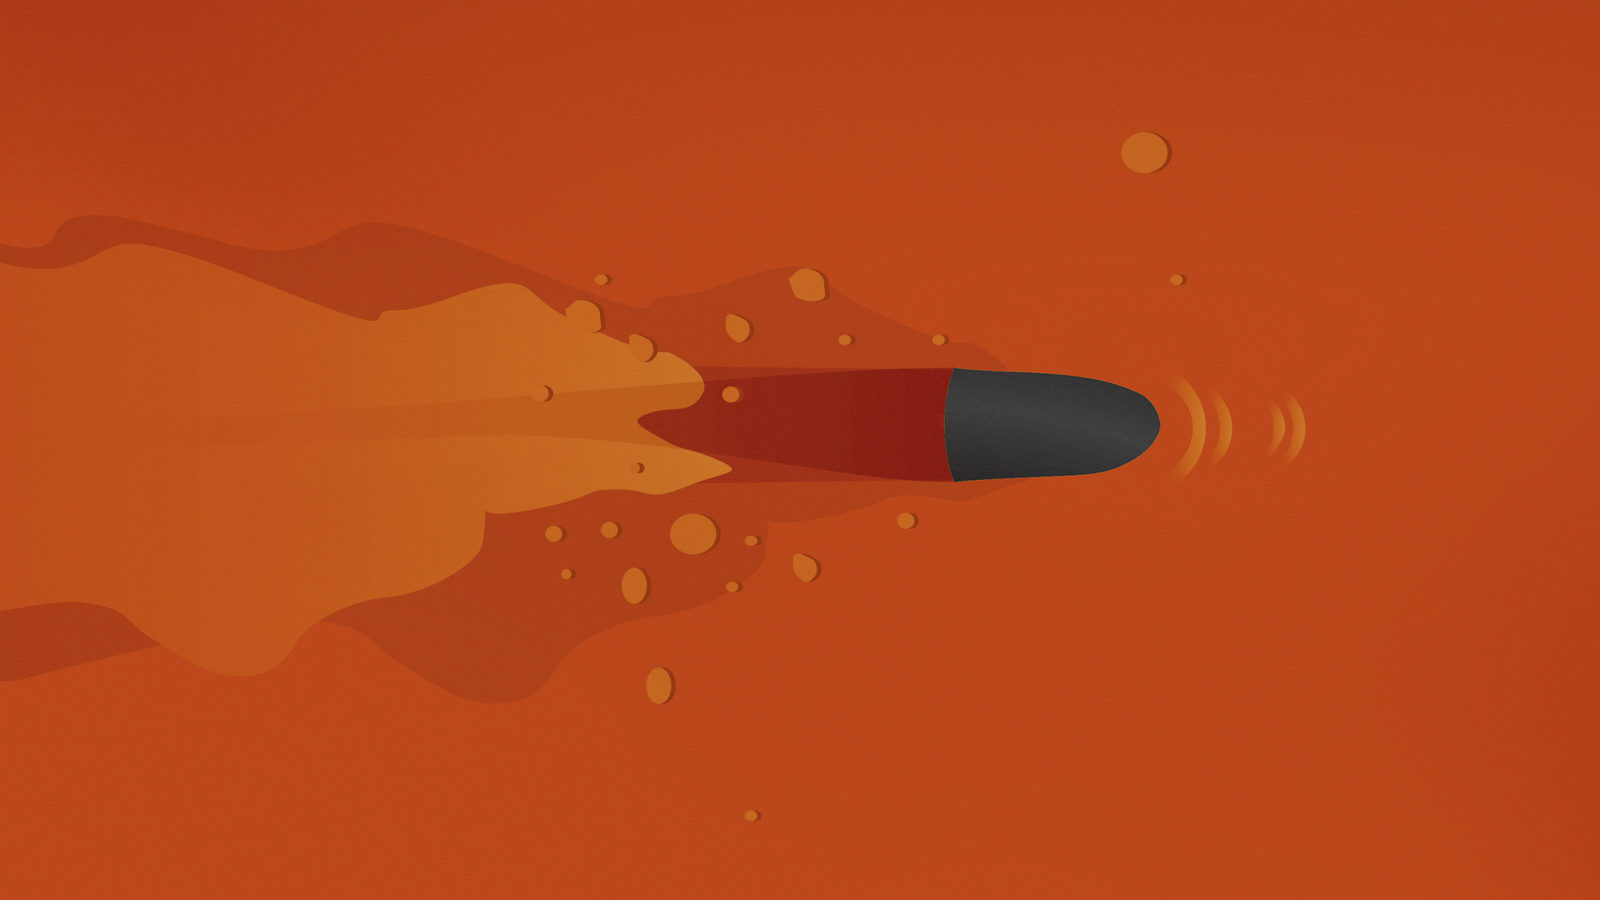 Illustration of bullet on orange background